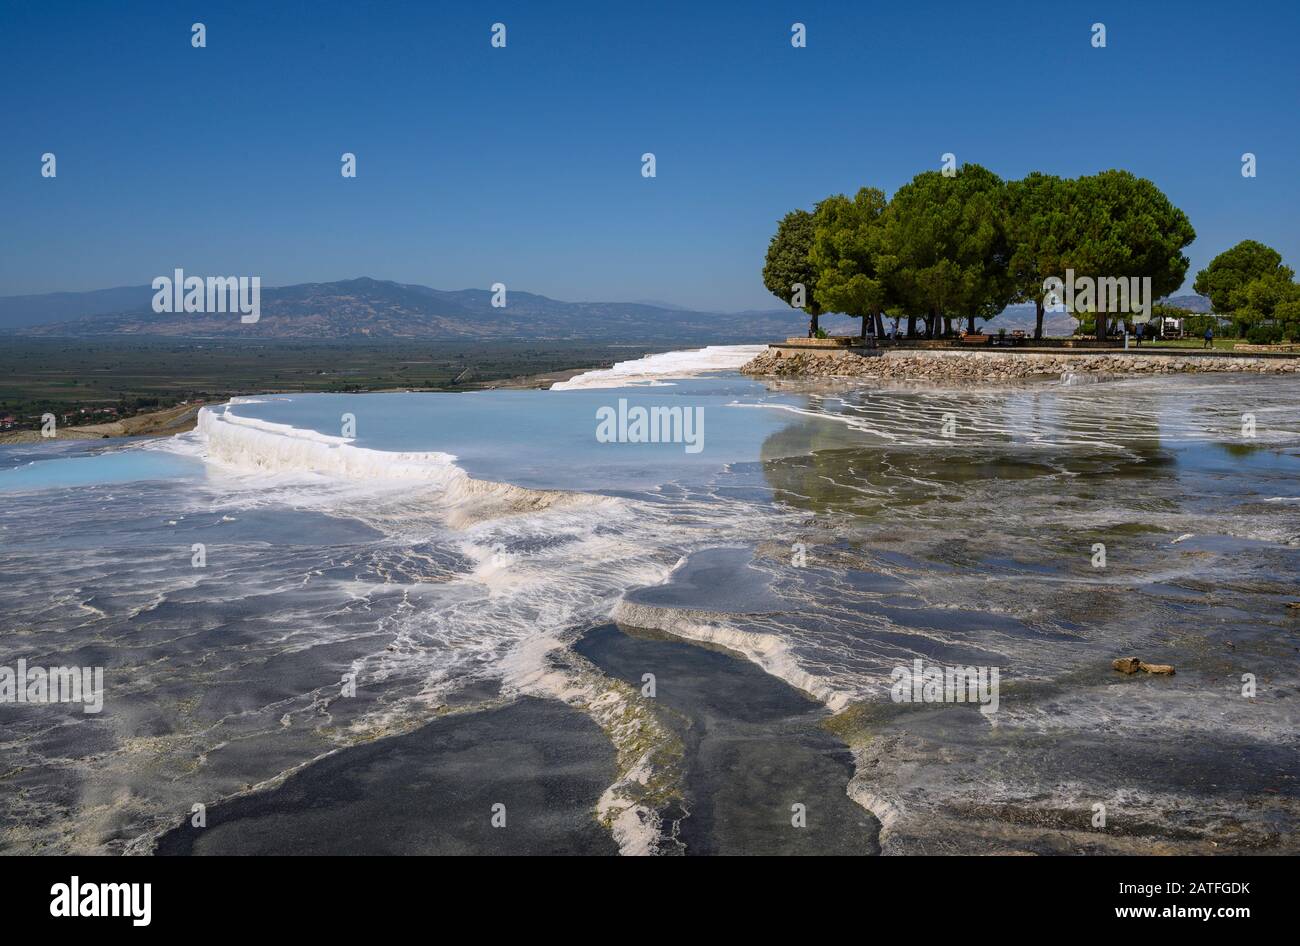 Aguas termales ricas en minerales que fluyen por terrazas travertinas en Pamukkale, Turquía Foto de stock